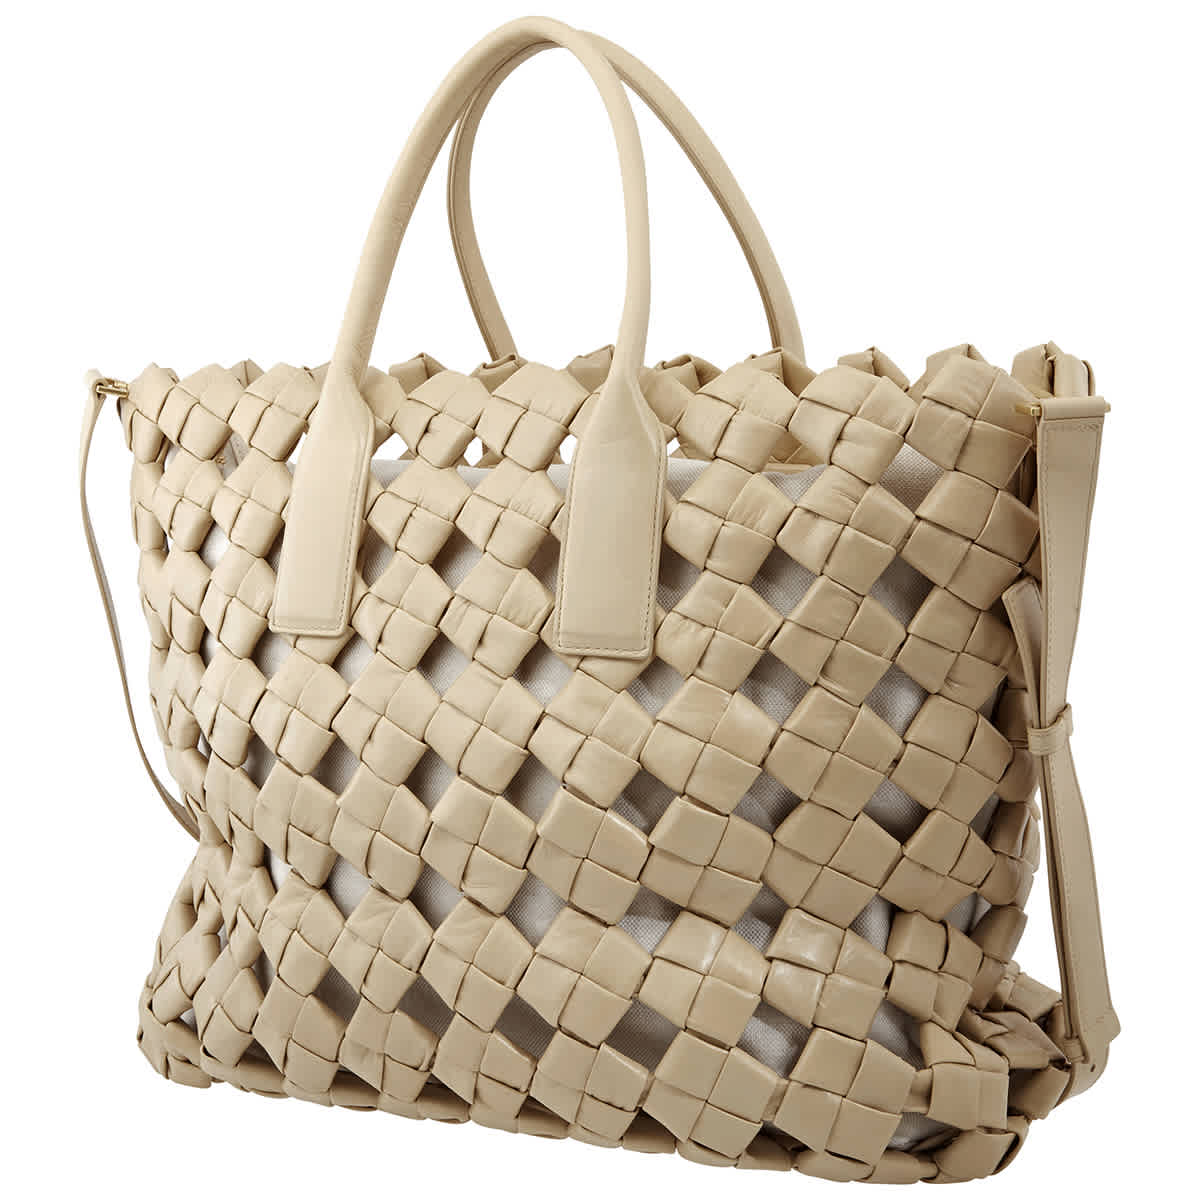 Bottega Veneta Intrecciato Crochet Weave Shopper Tote Bag In Beige,gold Tone